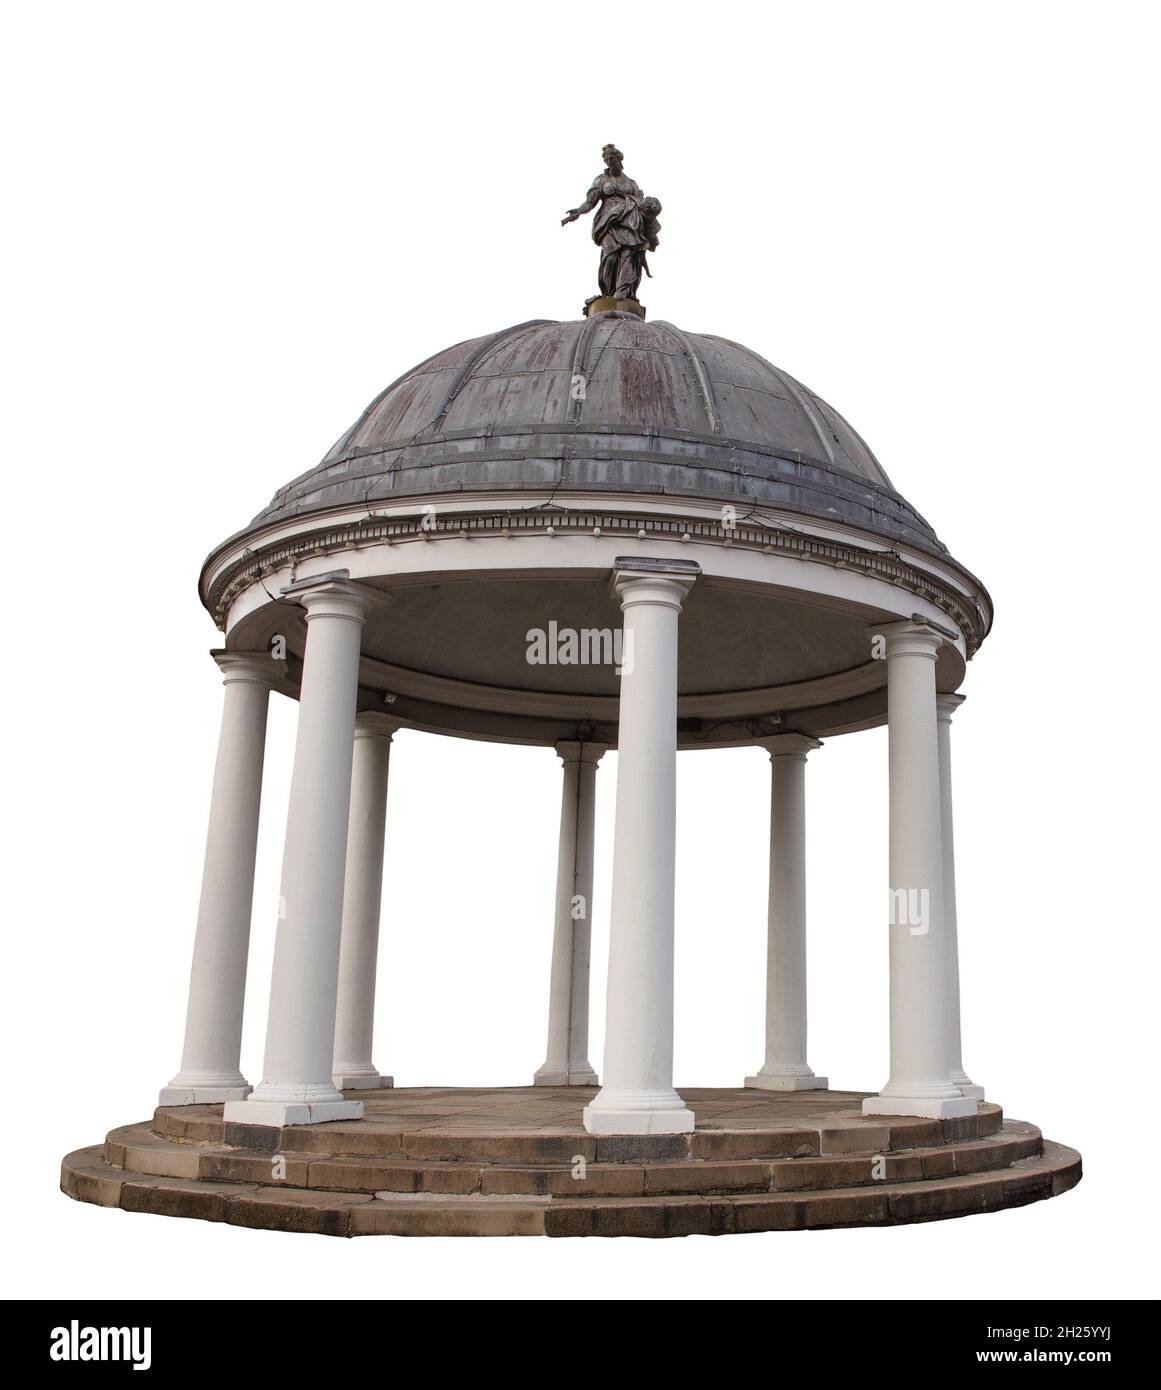 Das Butterkreuz auf dem Swaffham-Marktplatz. Erbaut im Jahr 1783, stellt die Figur auf der Kuppel die römische Göttin Cere, die Göttin der Landwirtschaft, grai, dar Stockfoto